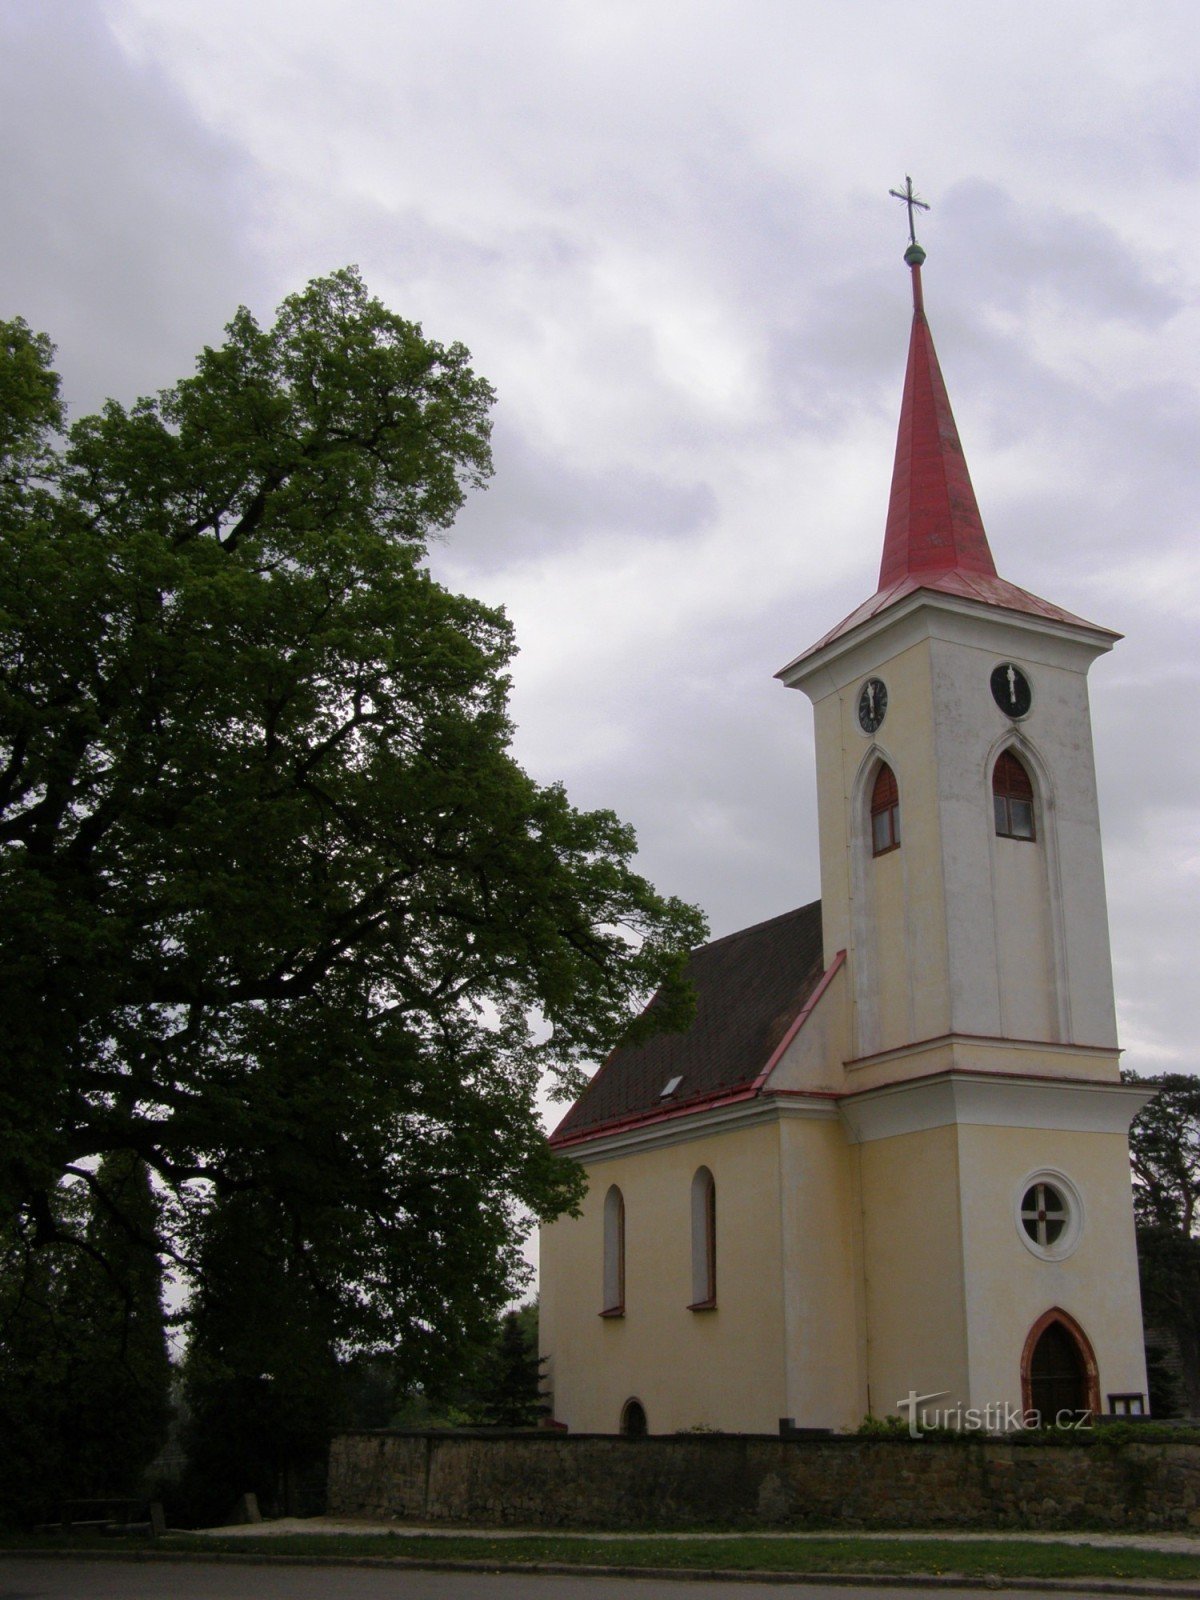 Velichovky - Iglesia de la Transfiguración del Señor